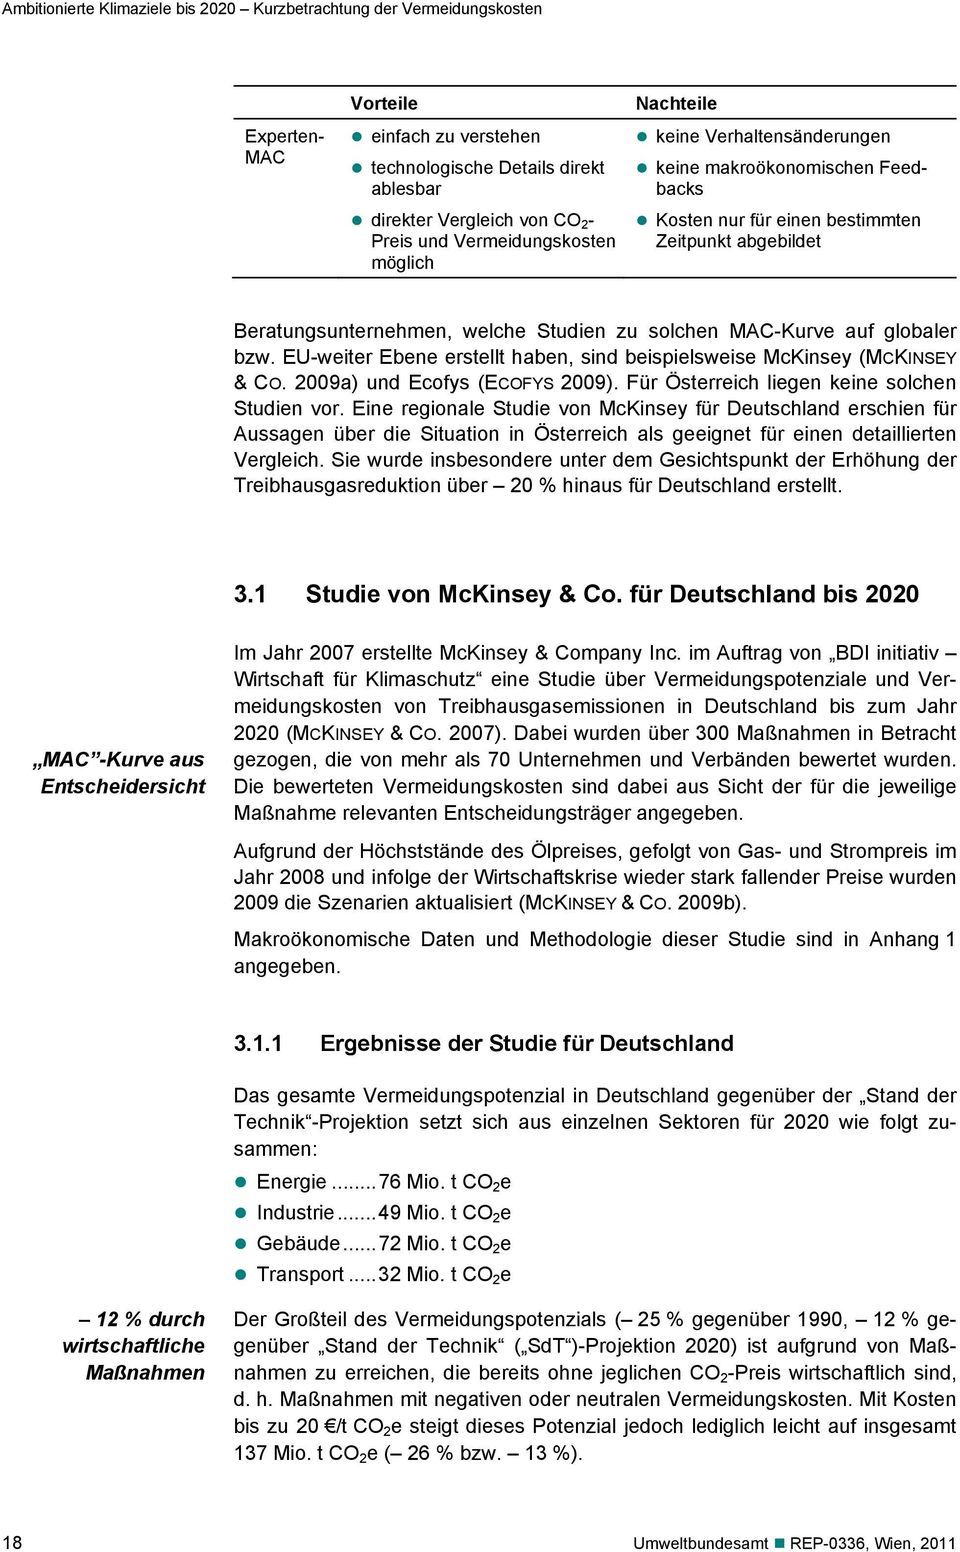 MAC-Kurve auf globaler bzw. EU-weiter Ebene erstellt haben, sind beispielsweise McKinsey (MCKINSEY & CO. 2009a) und Ecofys (ECOFYS 2009). Für Österreich liegen keine solchen Studien vor.